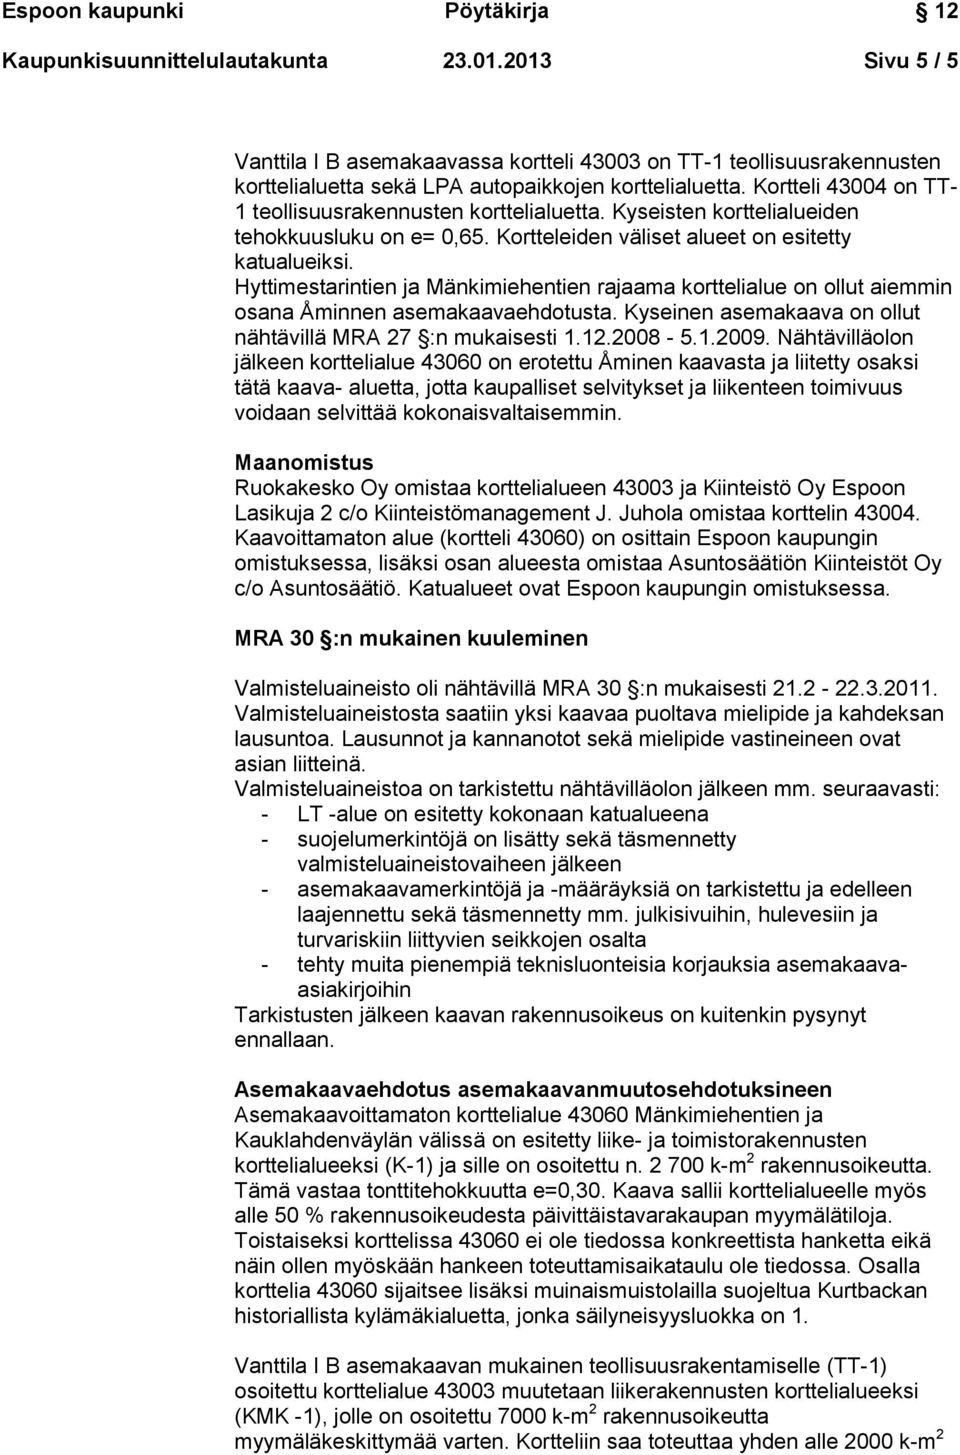 Hyttimestarintien ja Mänkimiehentien rajaama korttelialue on ollut aiemmin osana Åminnen asemakaavaehdotusta. Kyseinen asemakaava on ollut nähtävillä MRA 27 :n mukaisesti 1.12.2008-5.1.2009.